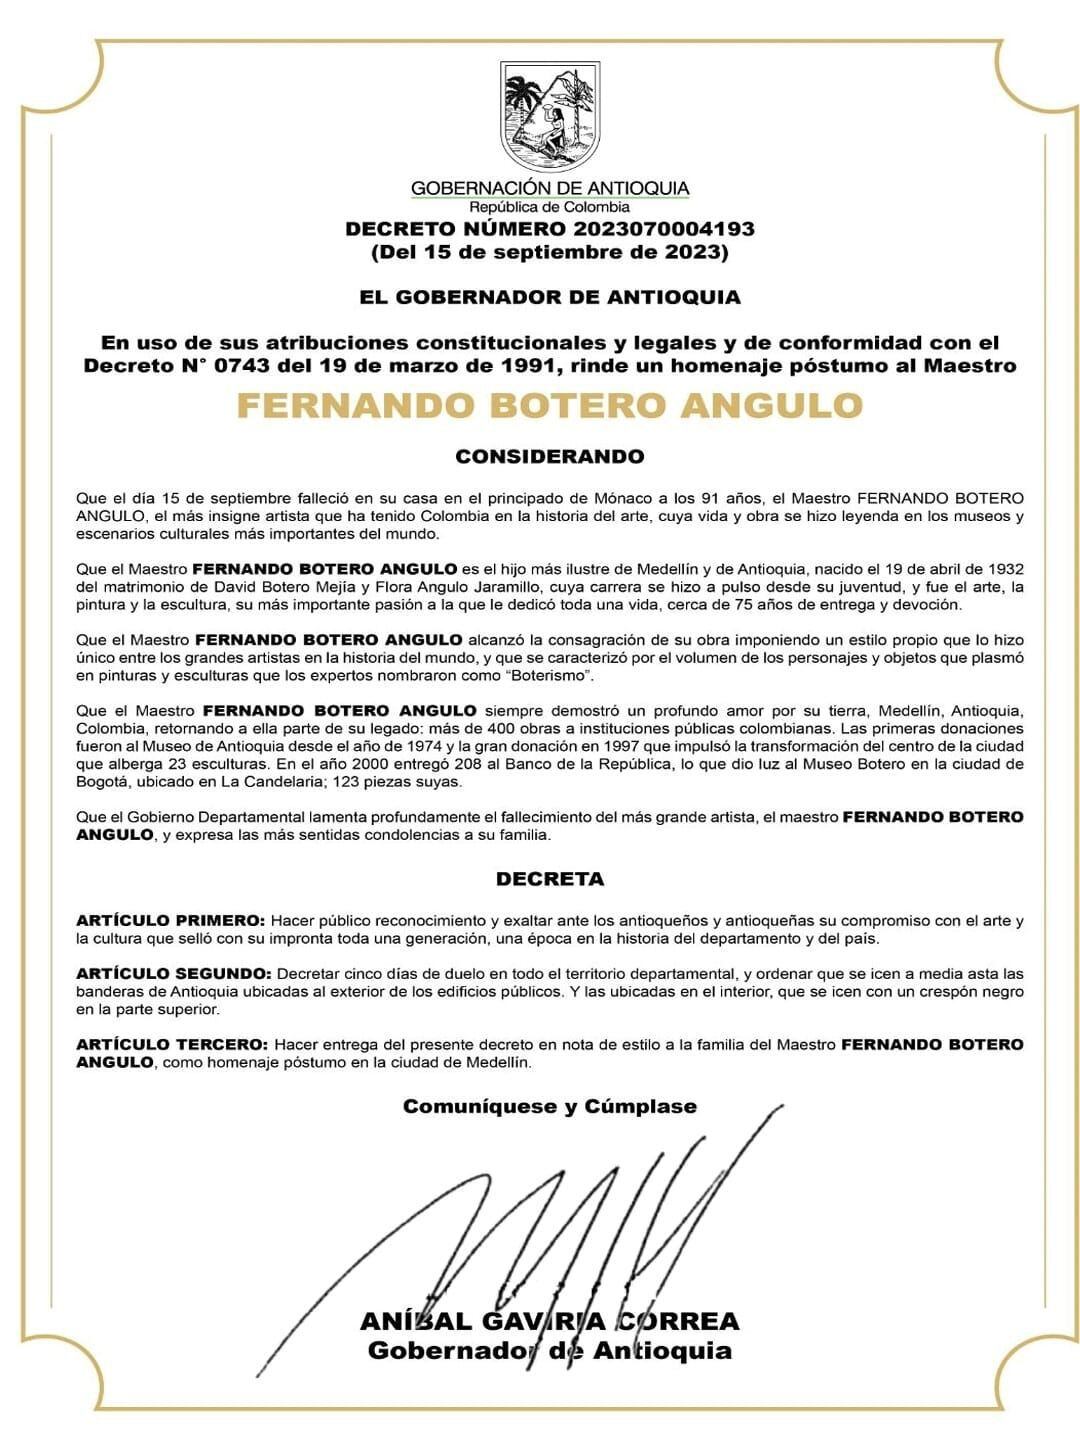 Decreto en el que se declaran 5 días de duelo por muerte de Fernando Botero.